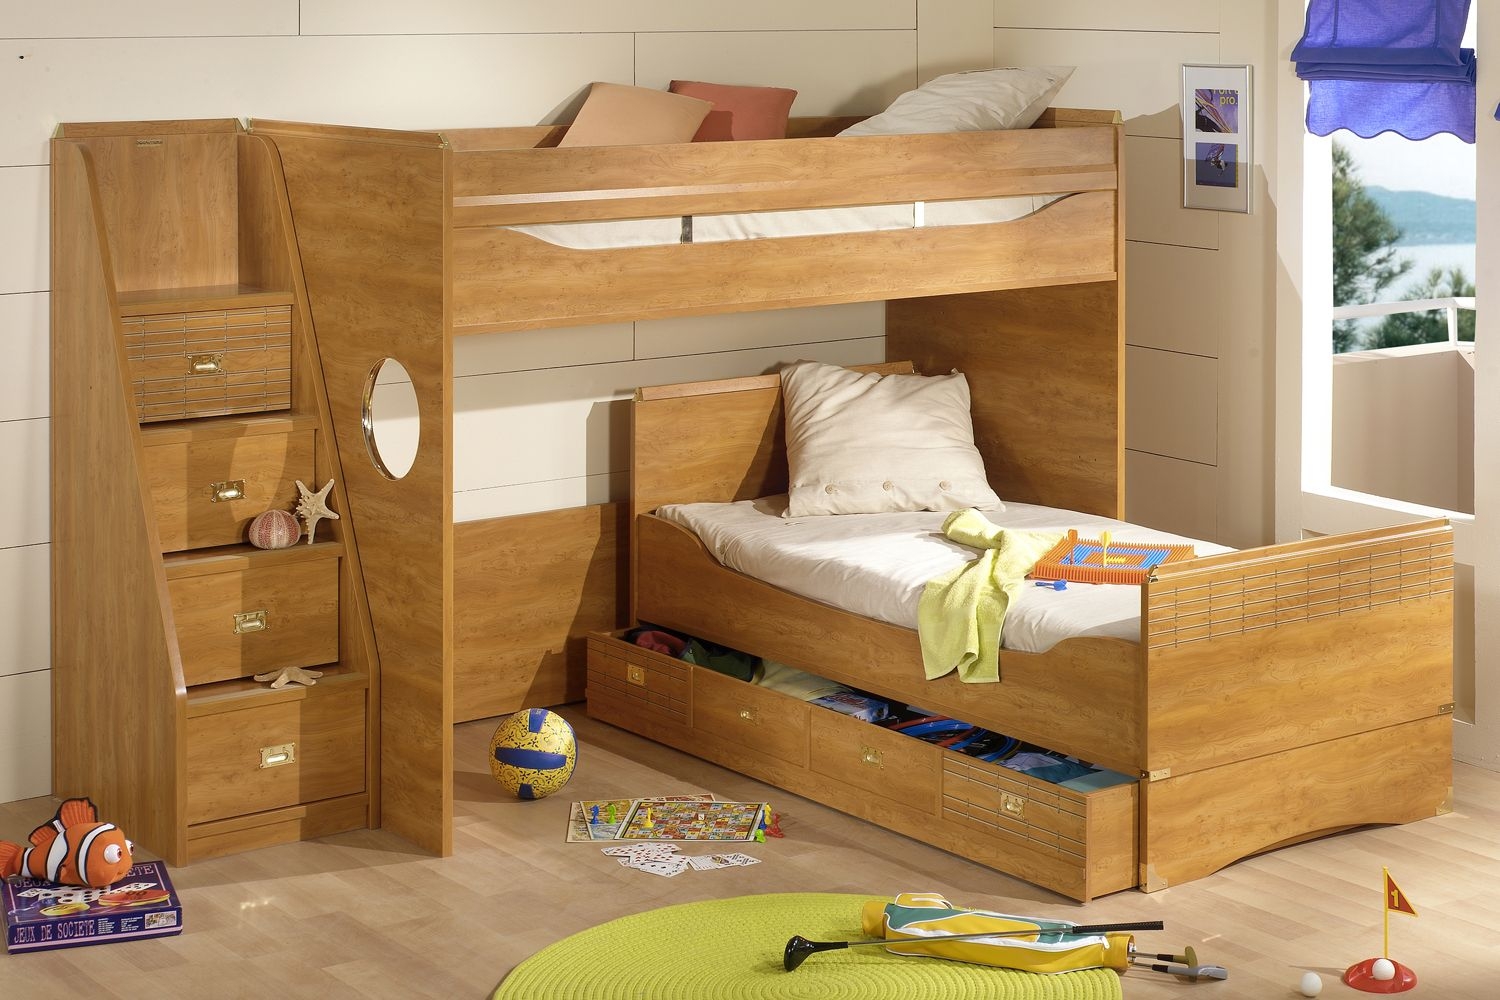 L shaped bunk beds plans